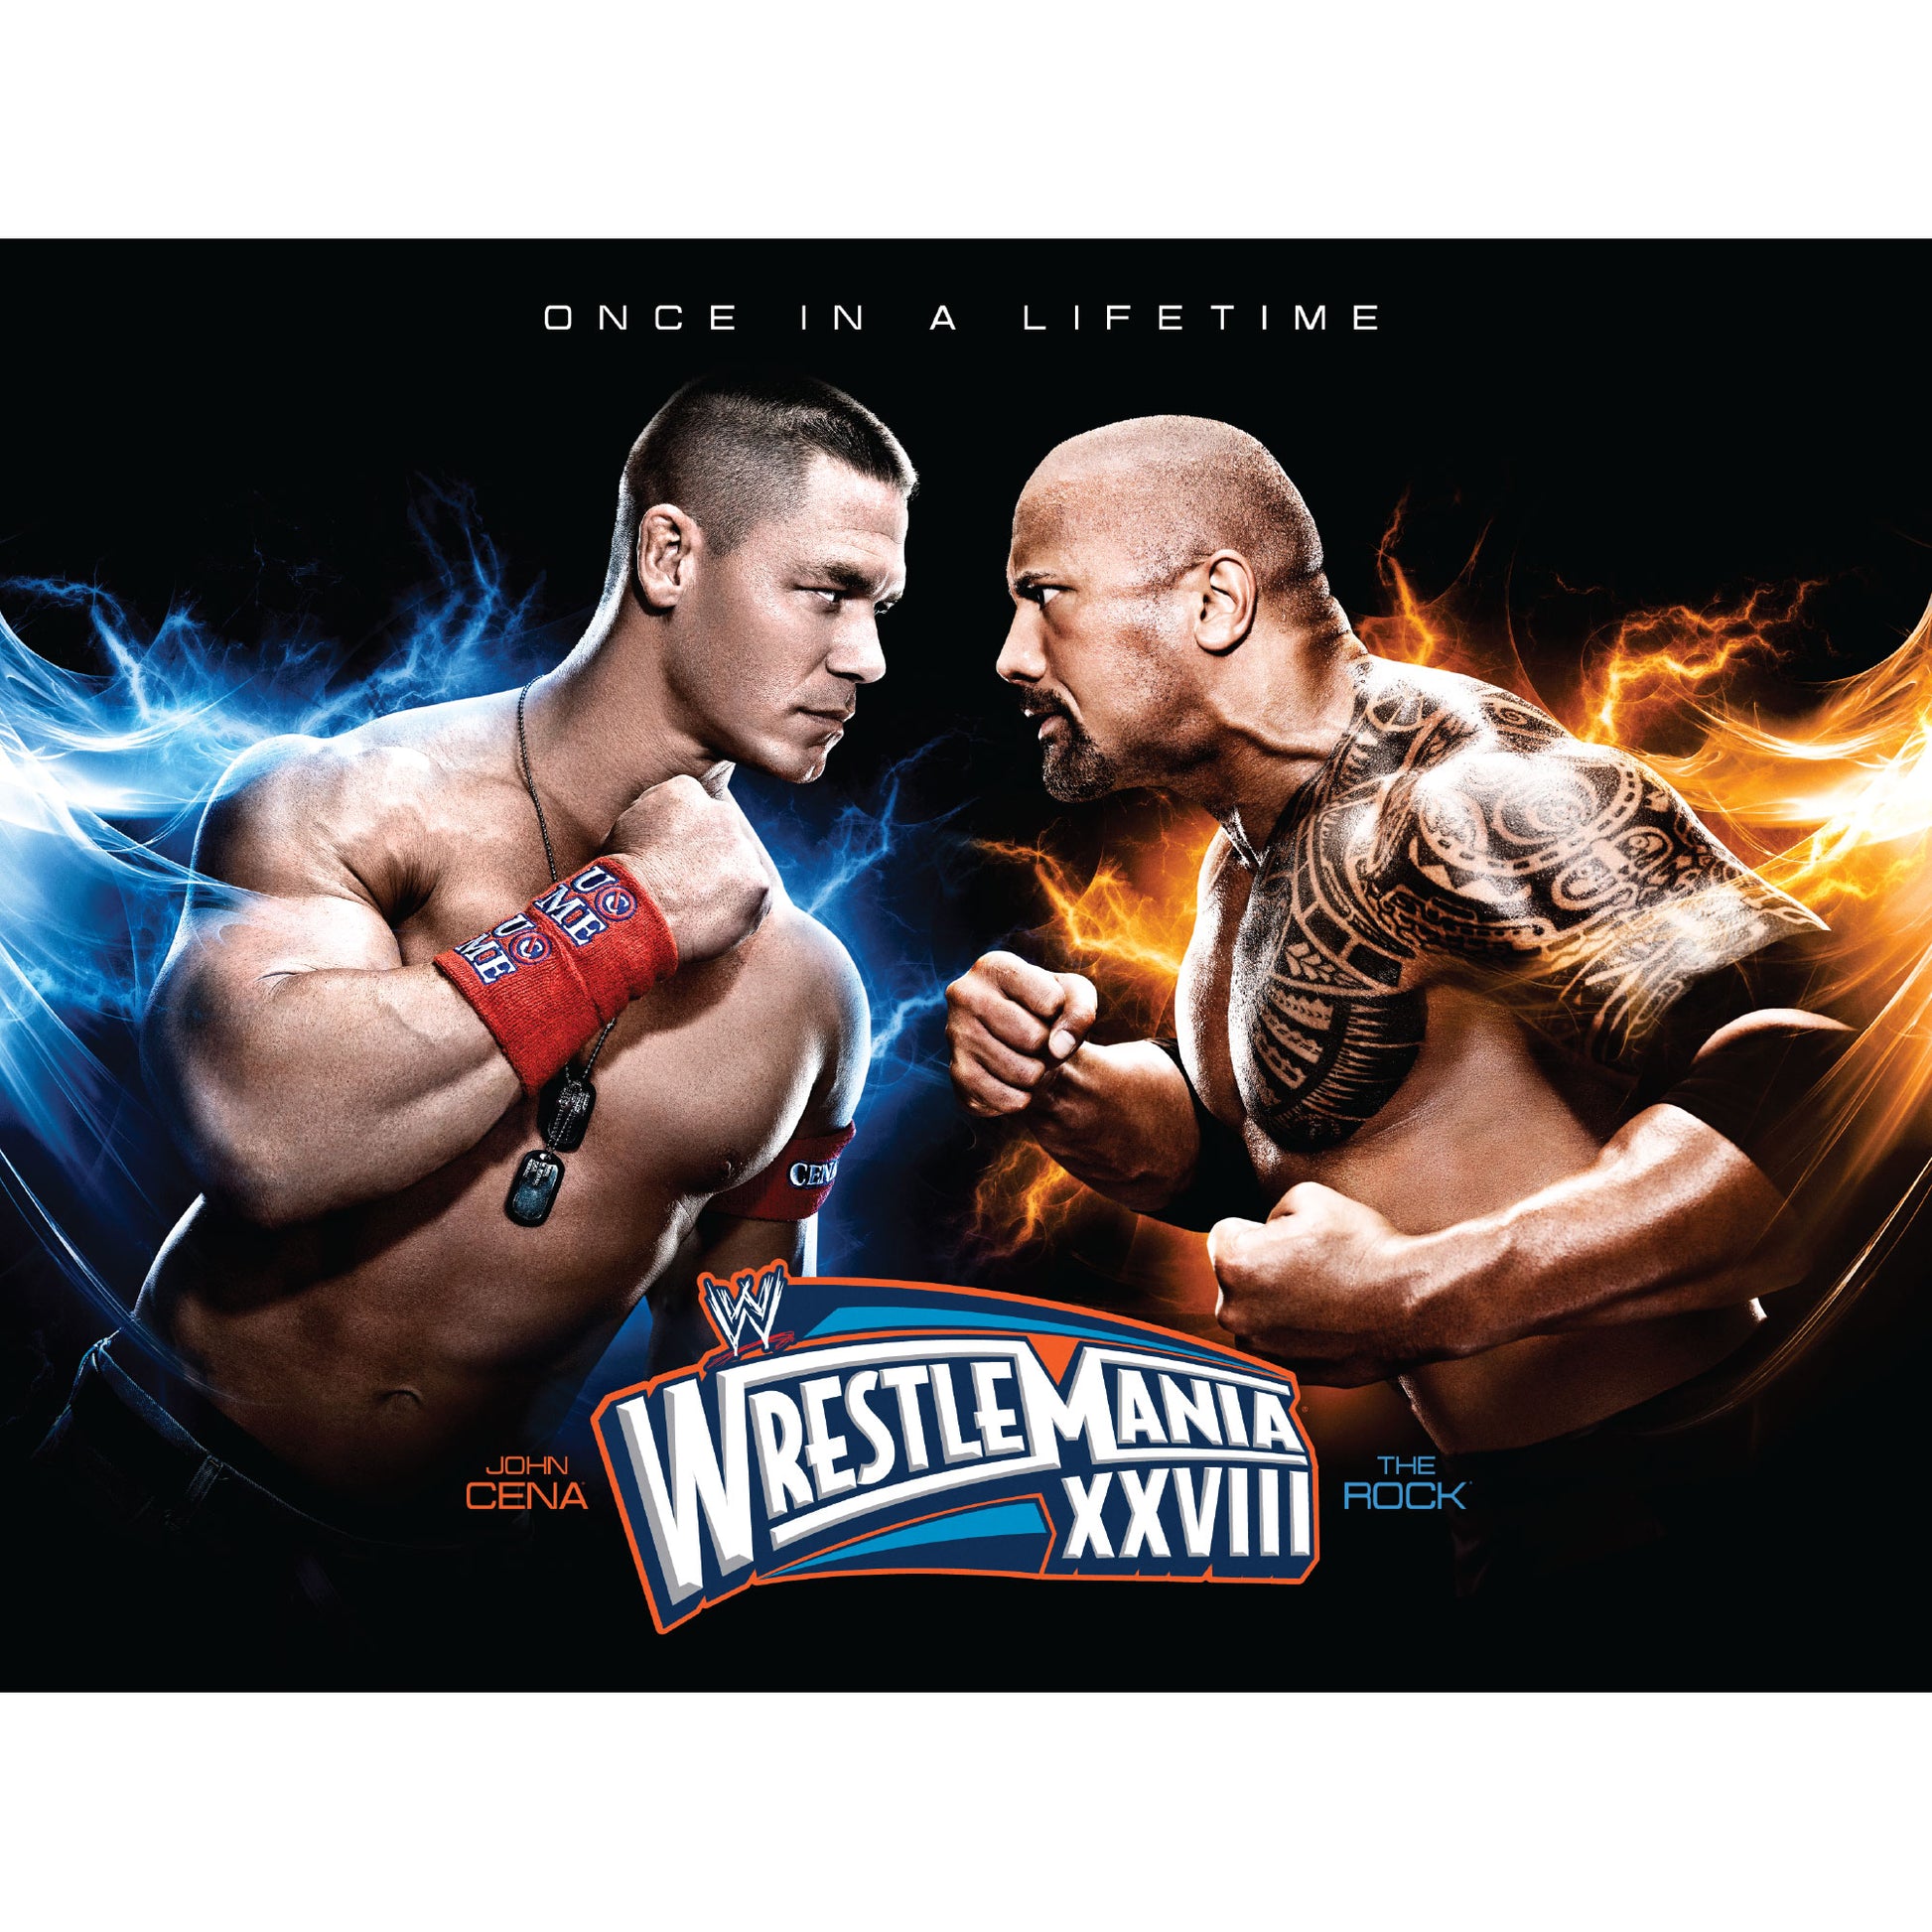 Wrestlemania 28 Cena vs. Rock Poster